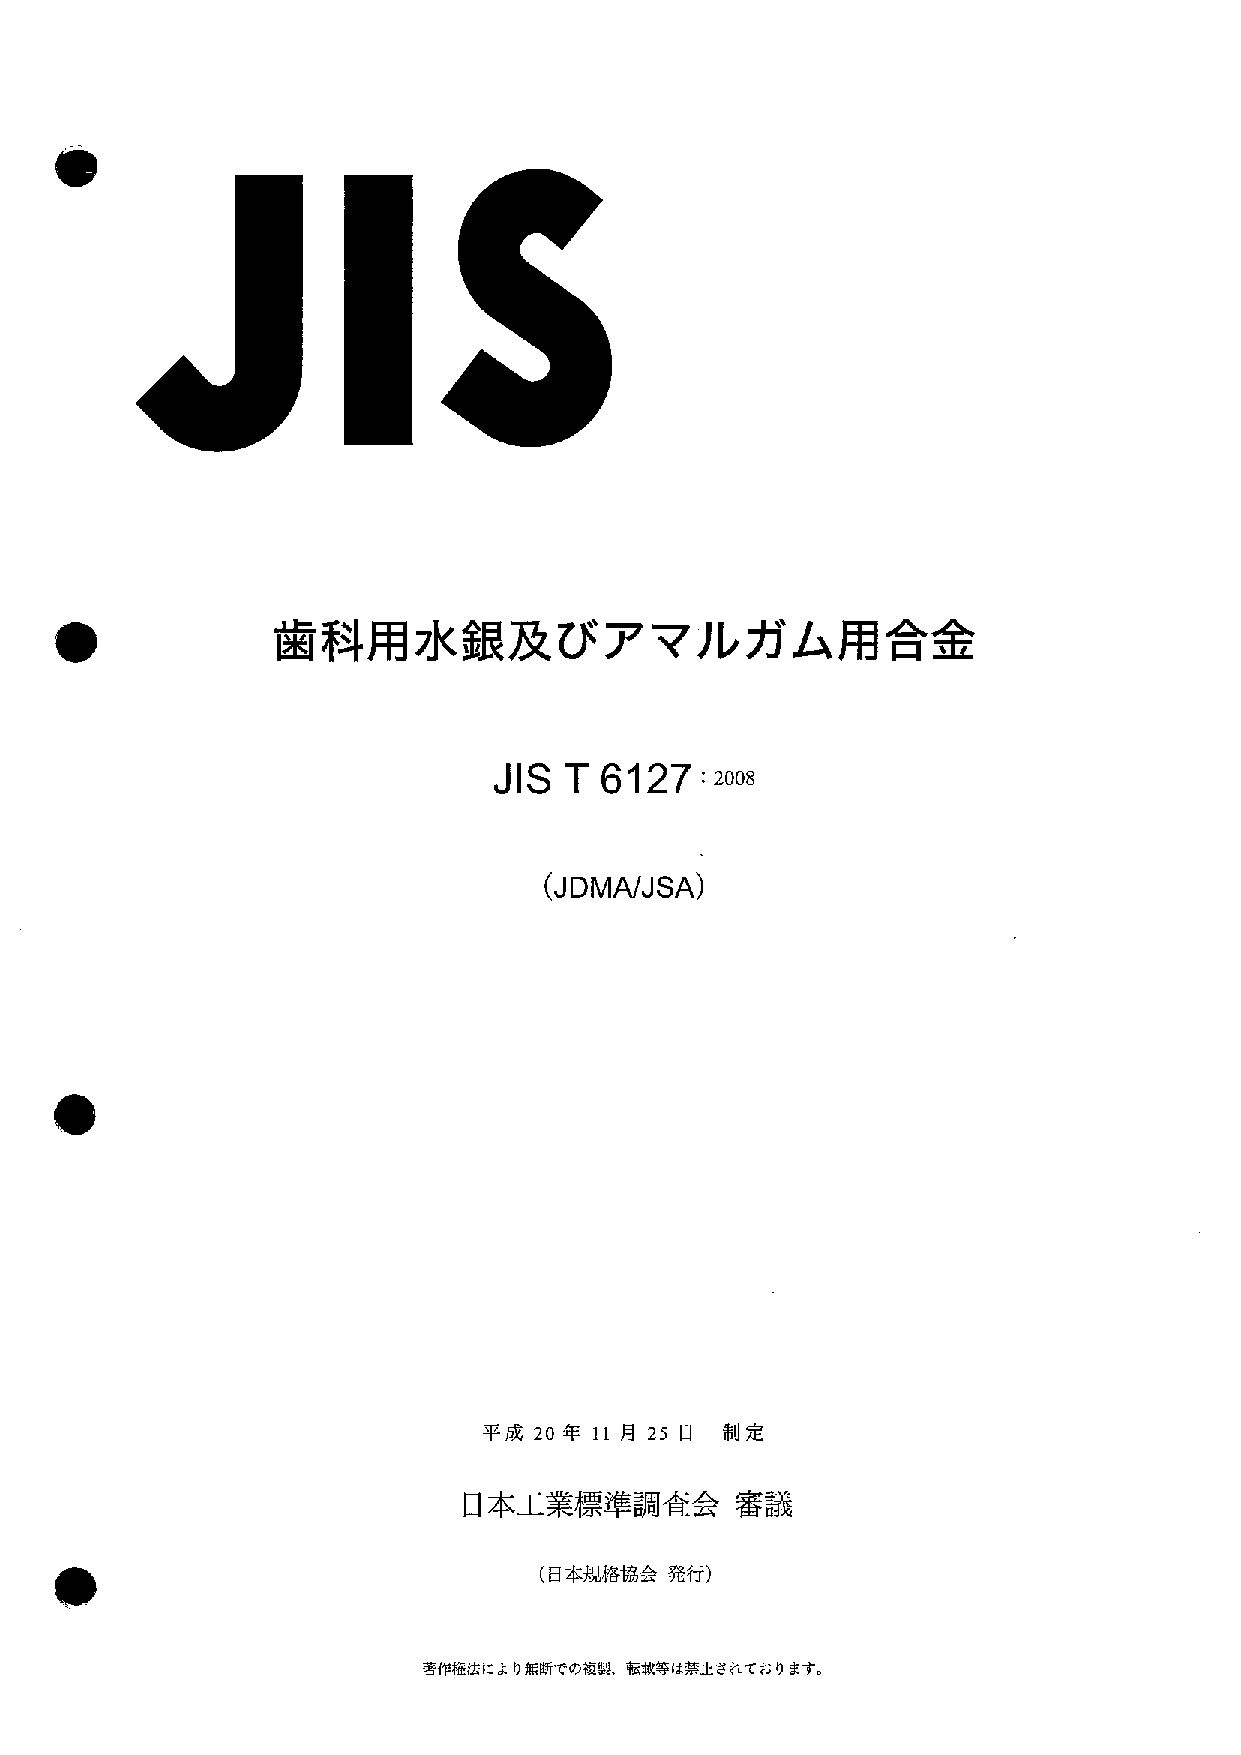 JIS T 6127:2008封面图